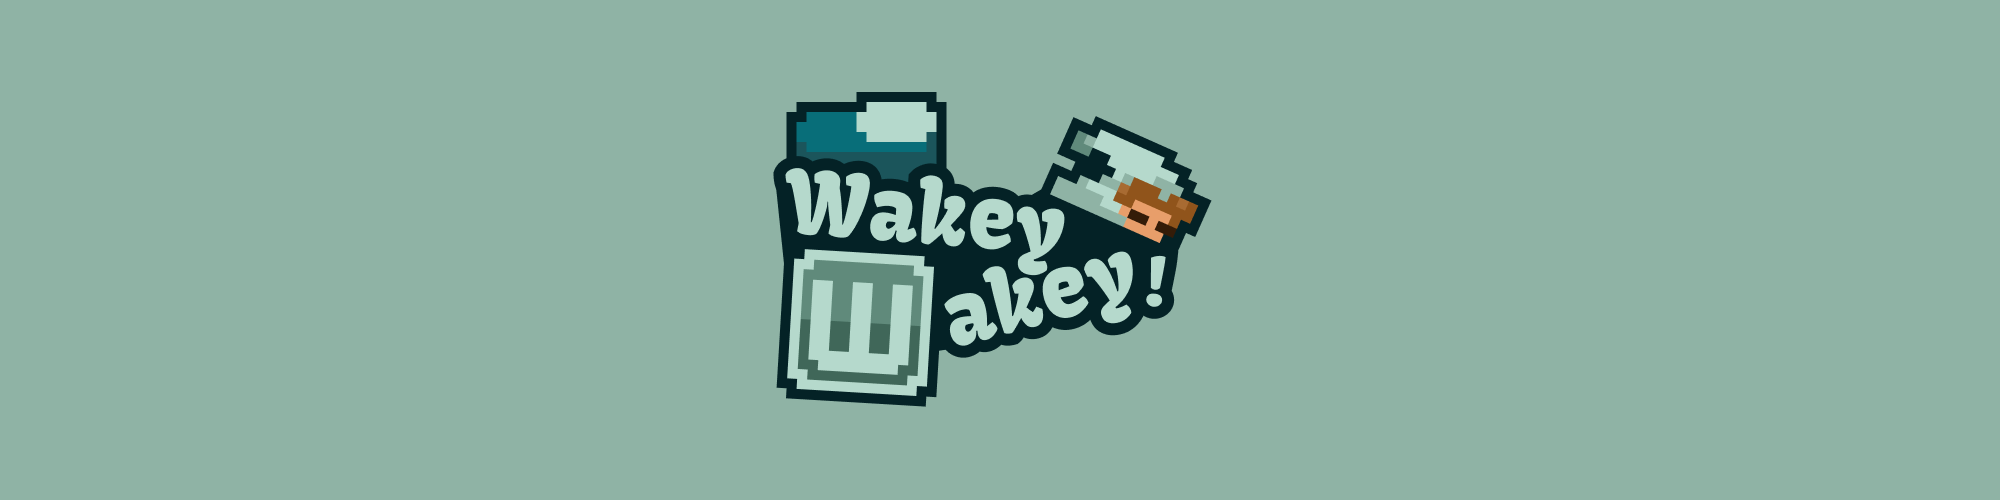 Wakey Wakey